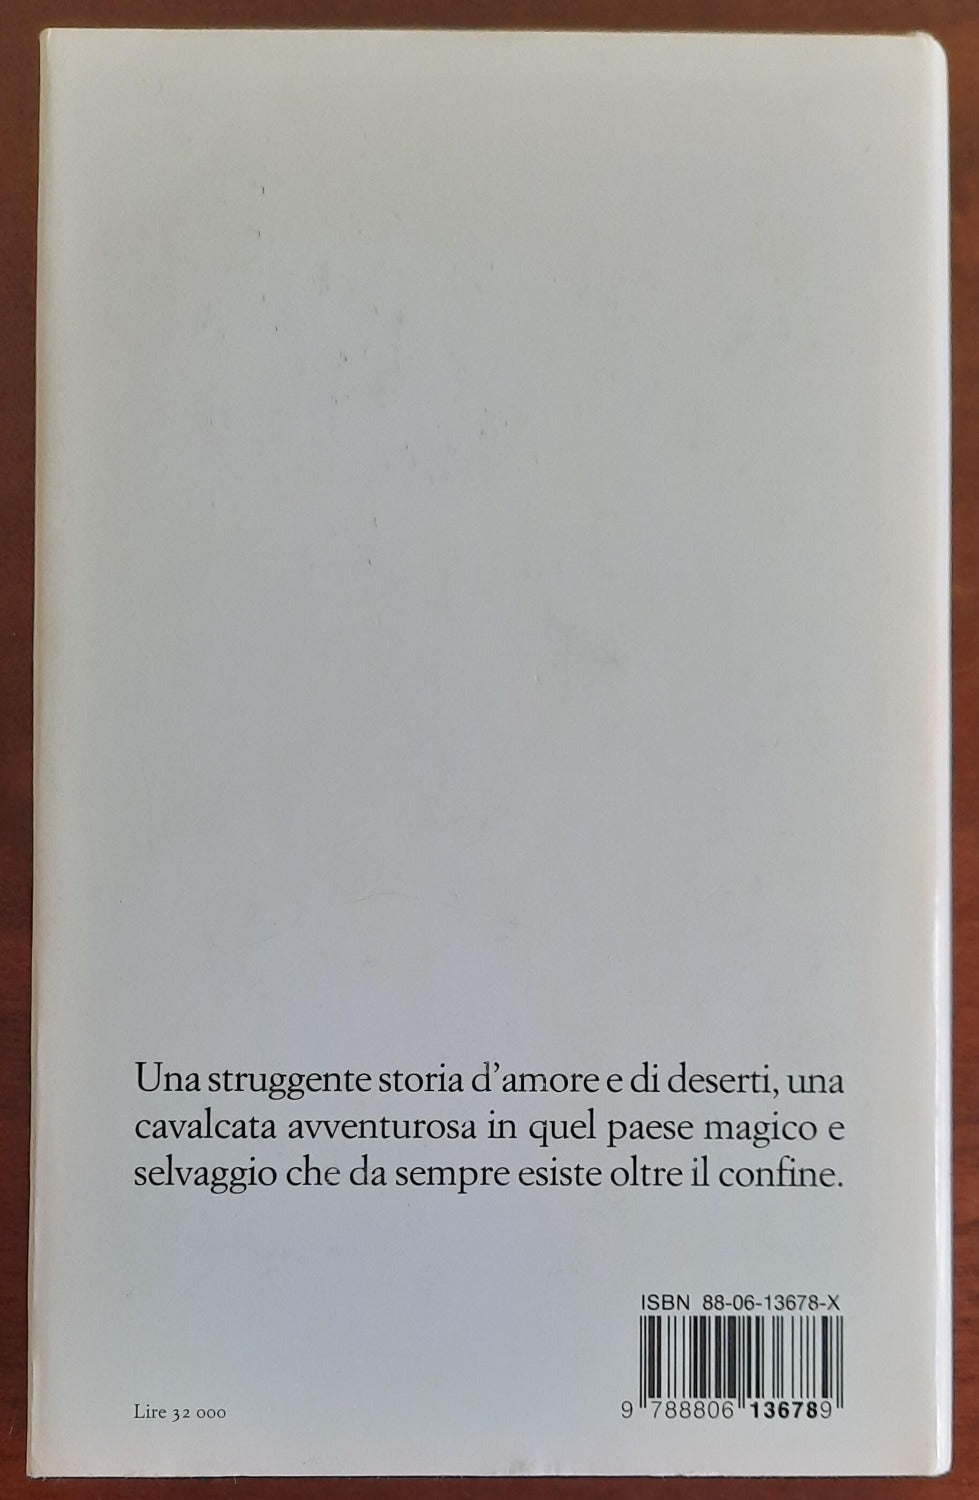 Oltre il confine - Einaudi - 1995